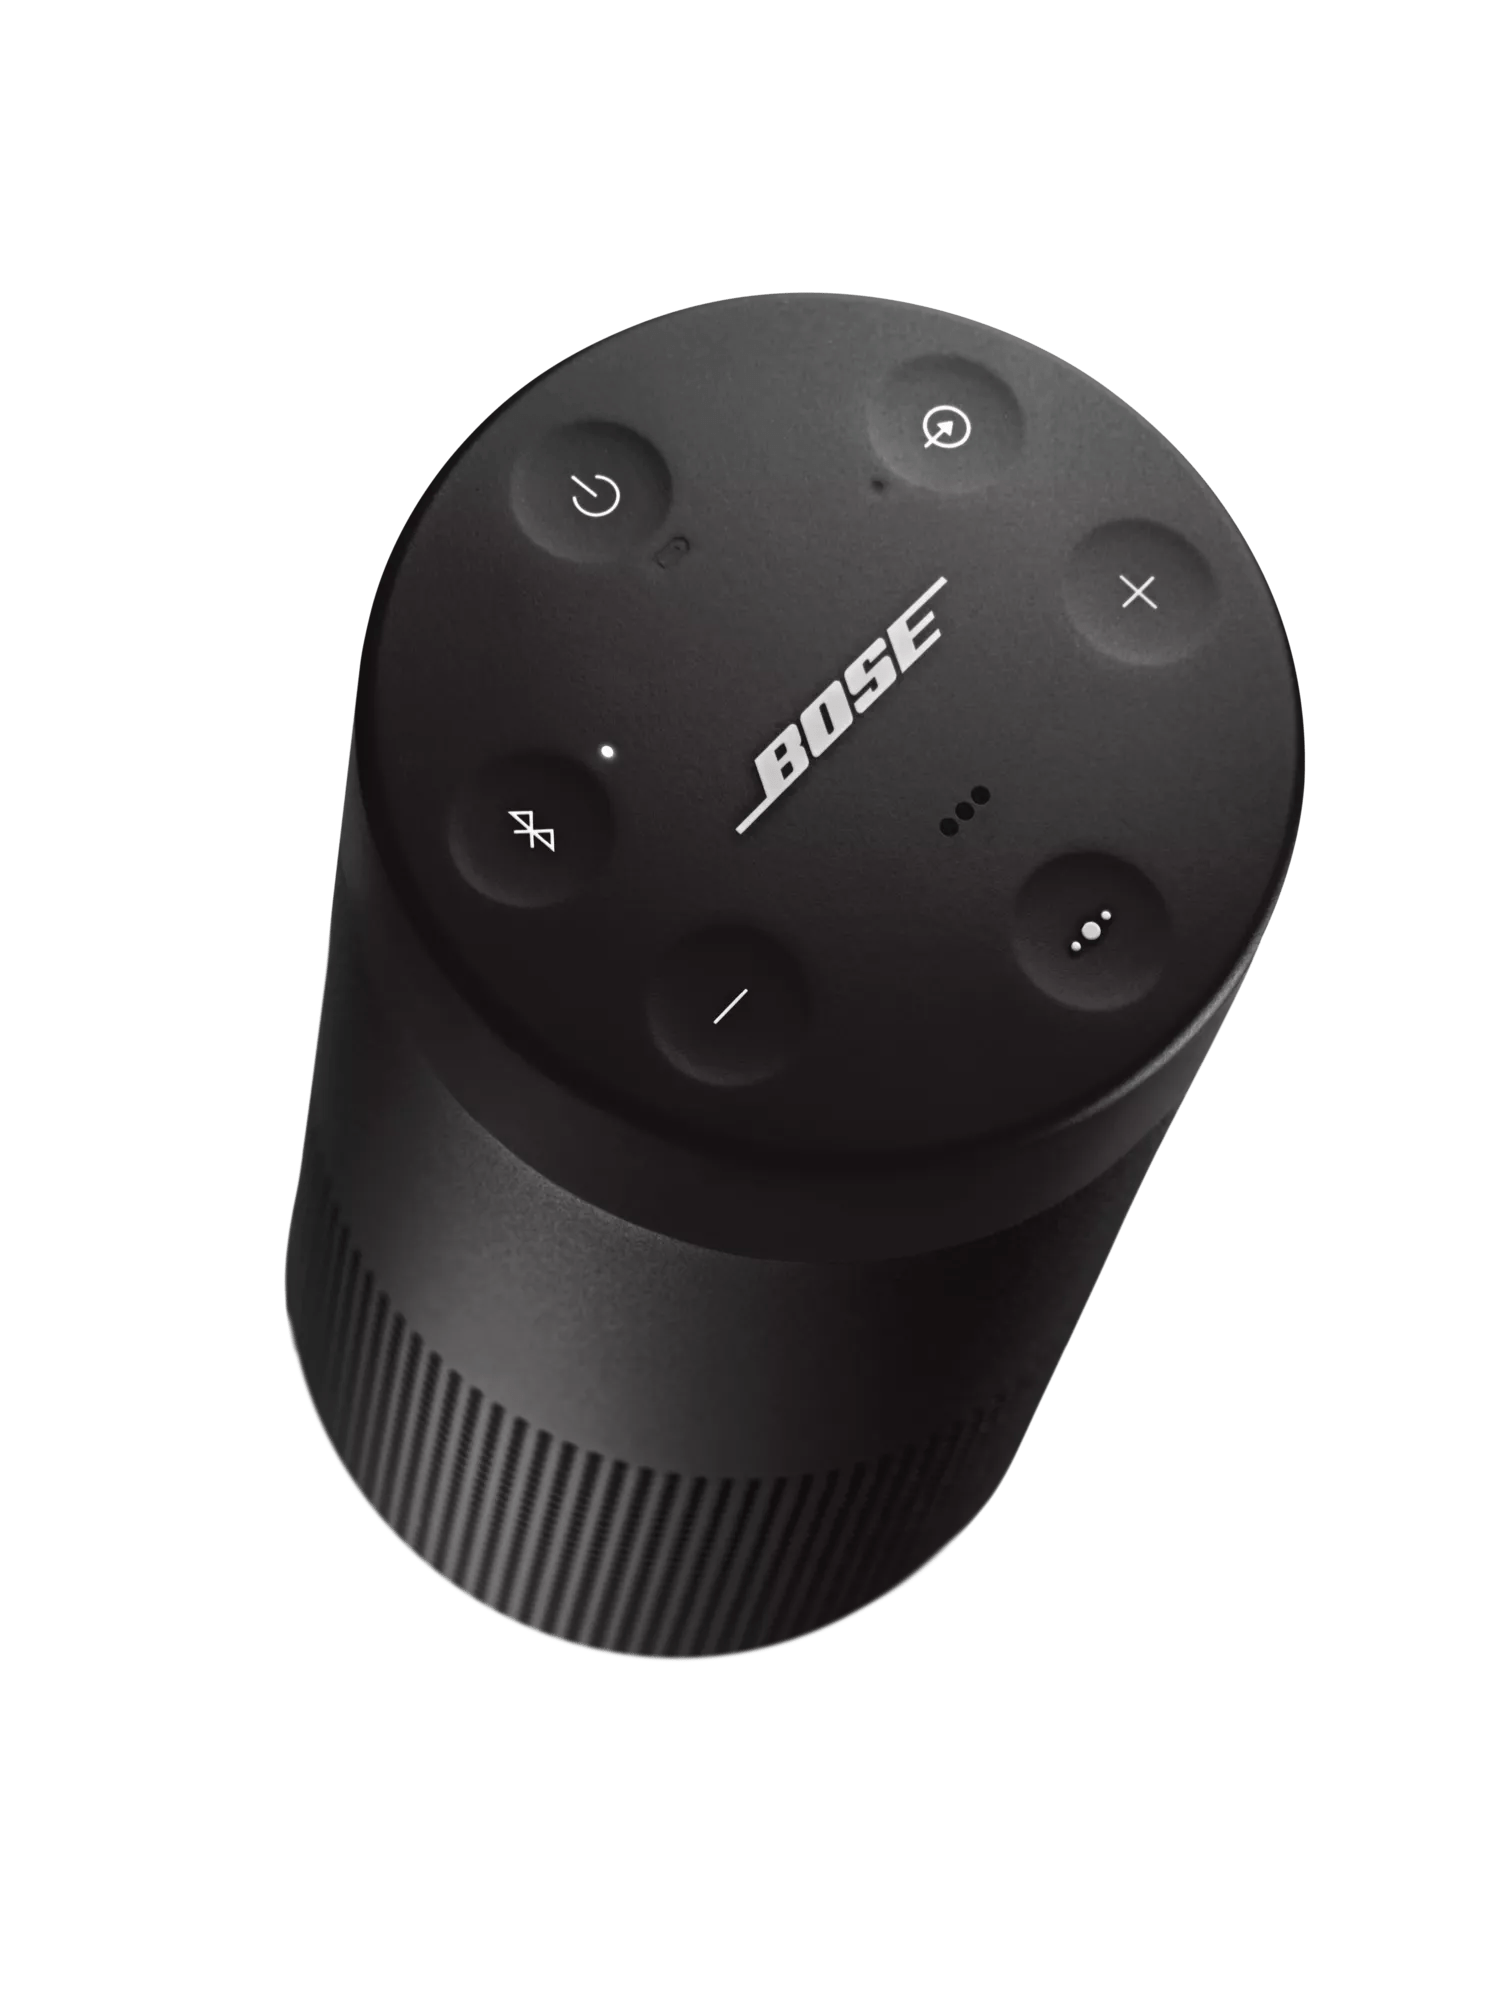 SoundLink Revolve II Bluetooth Speaker Bose